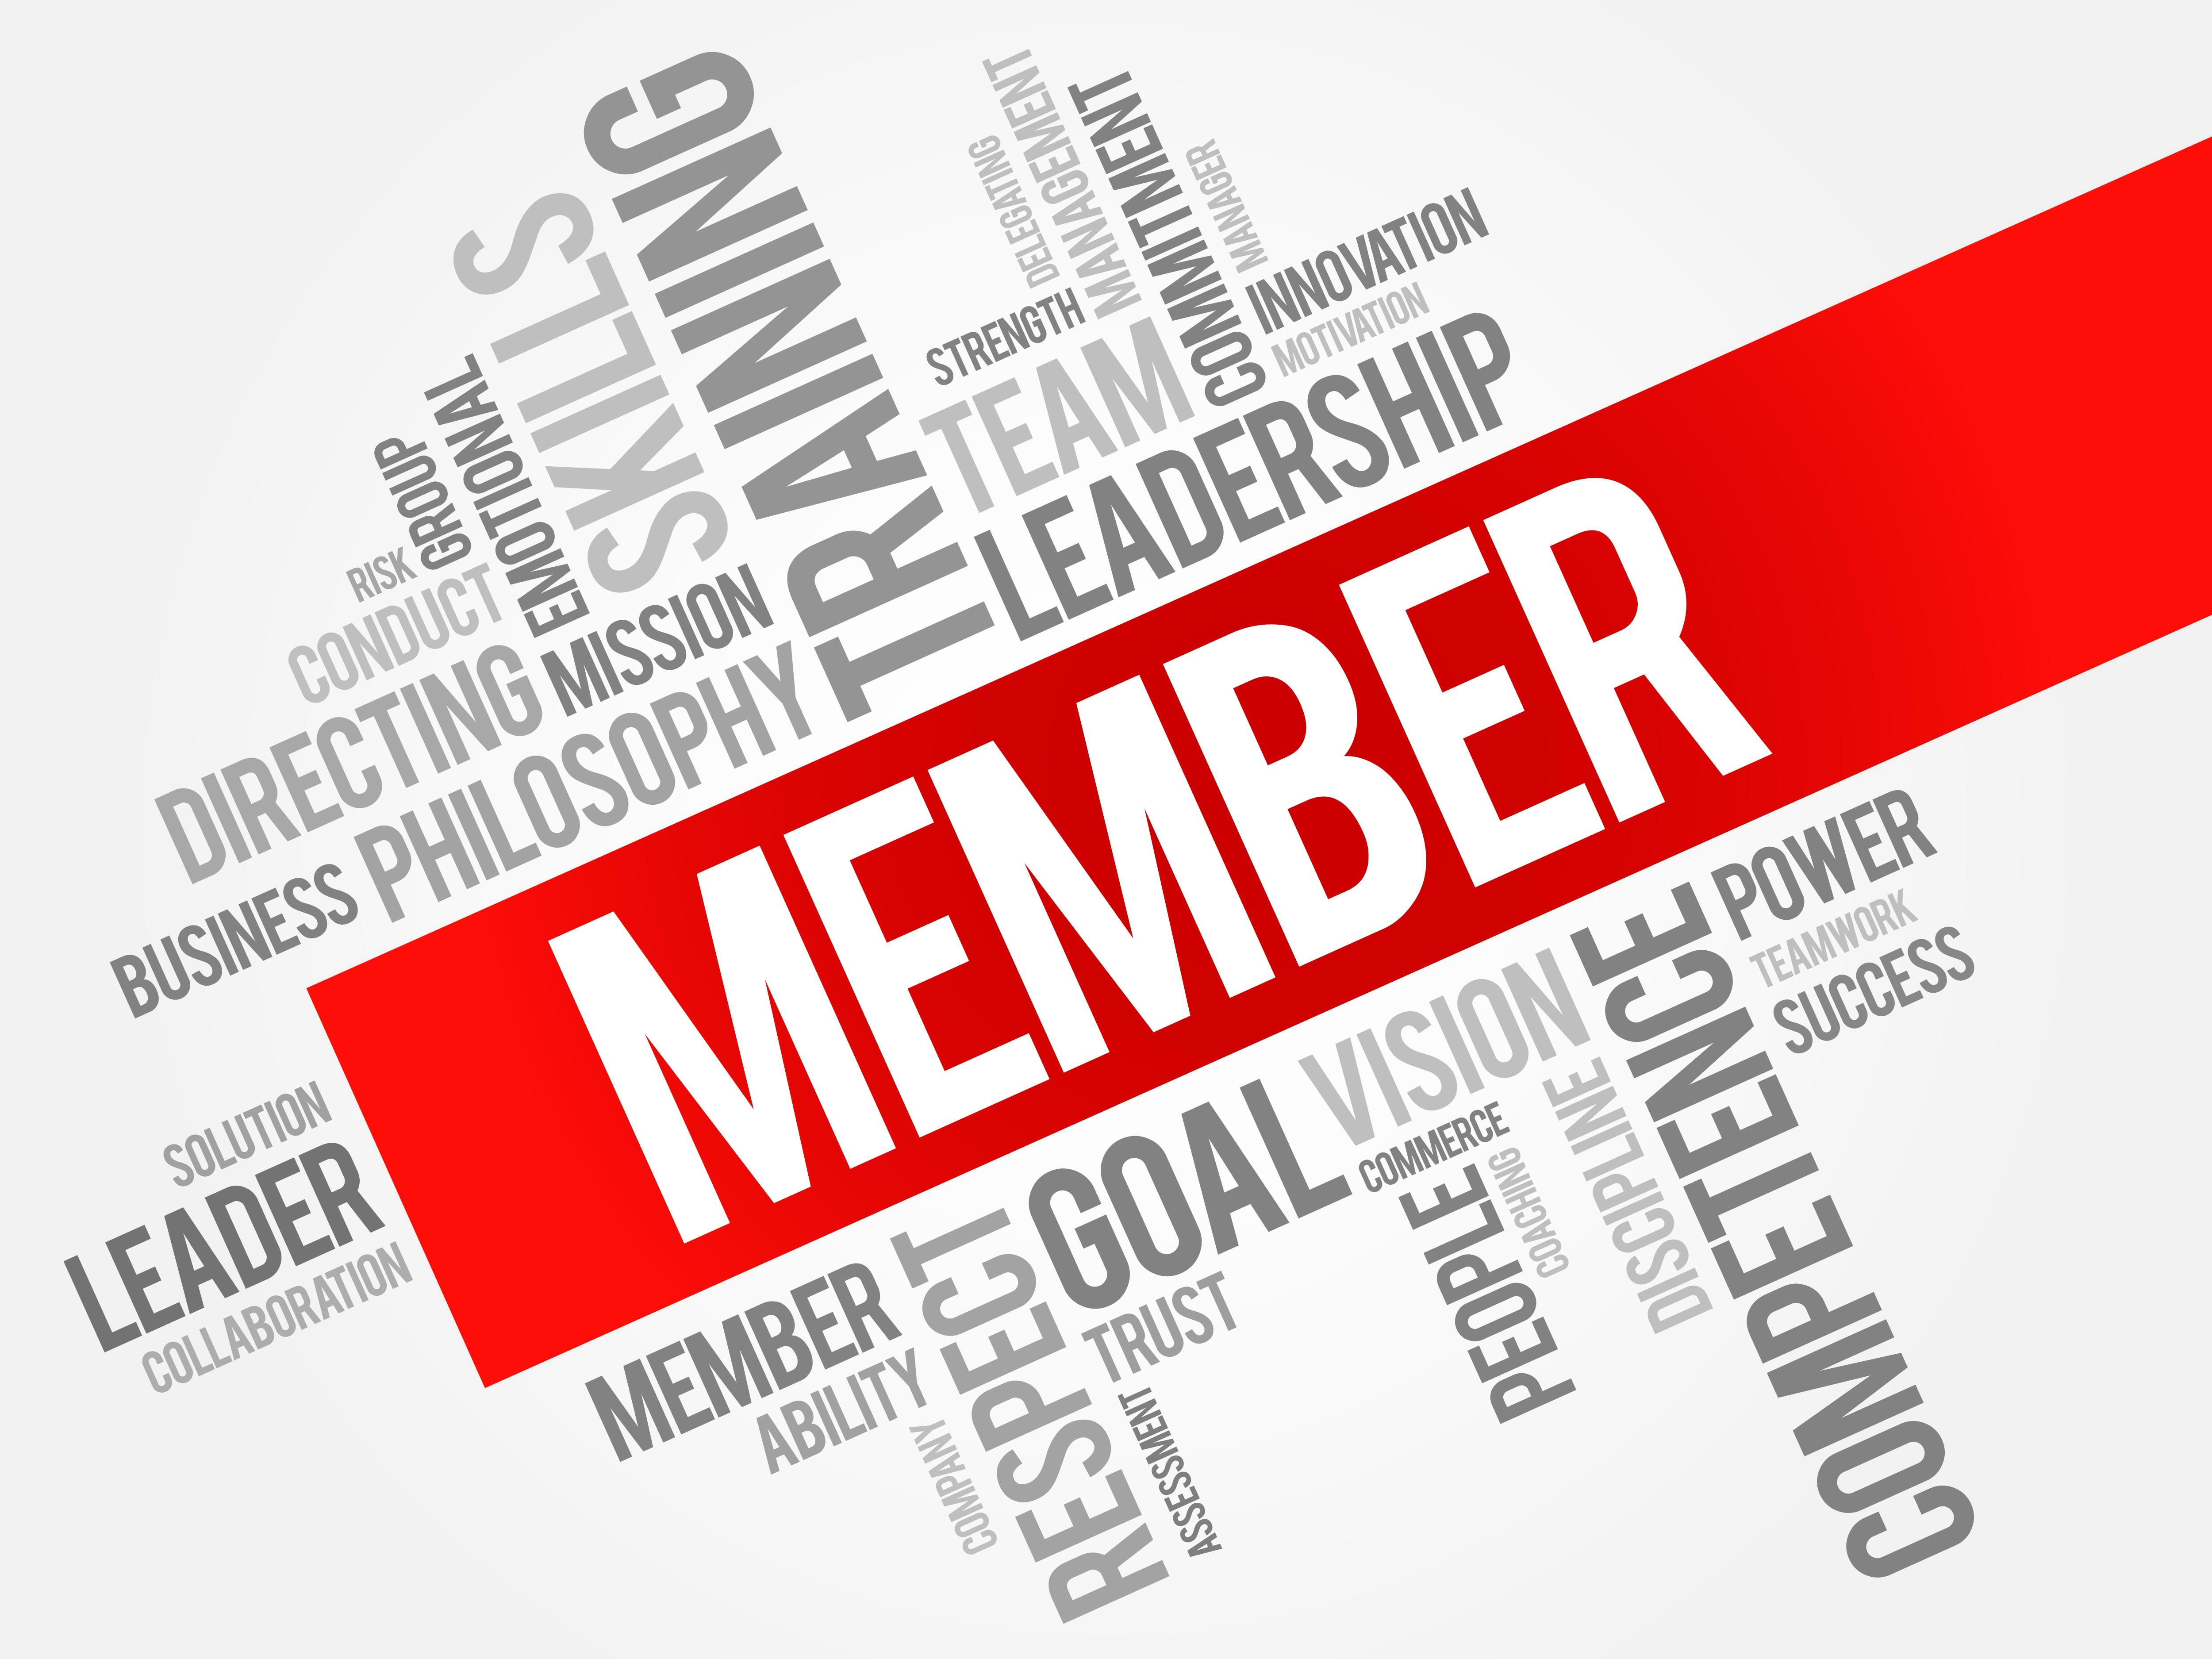 Membership information